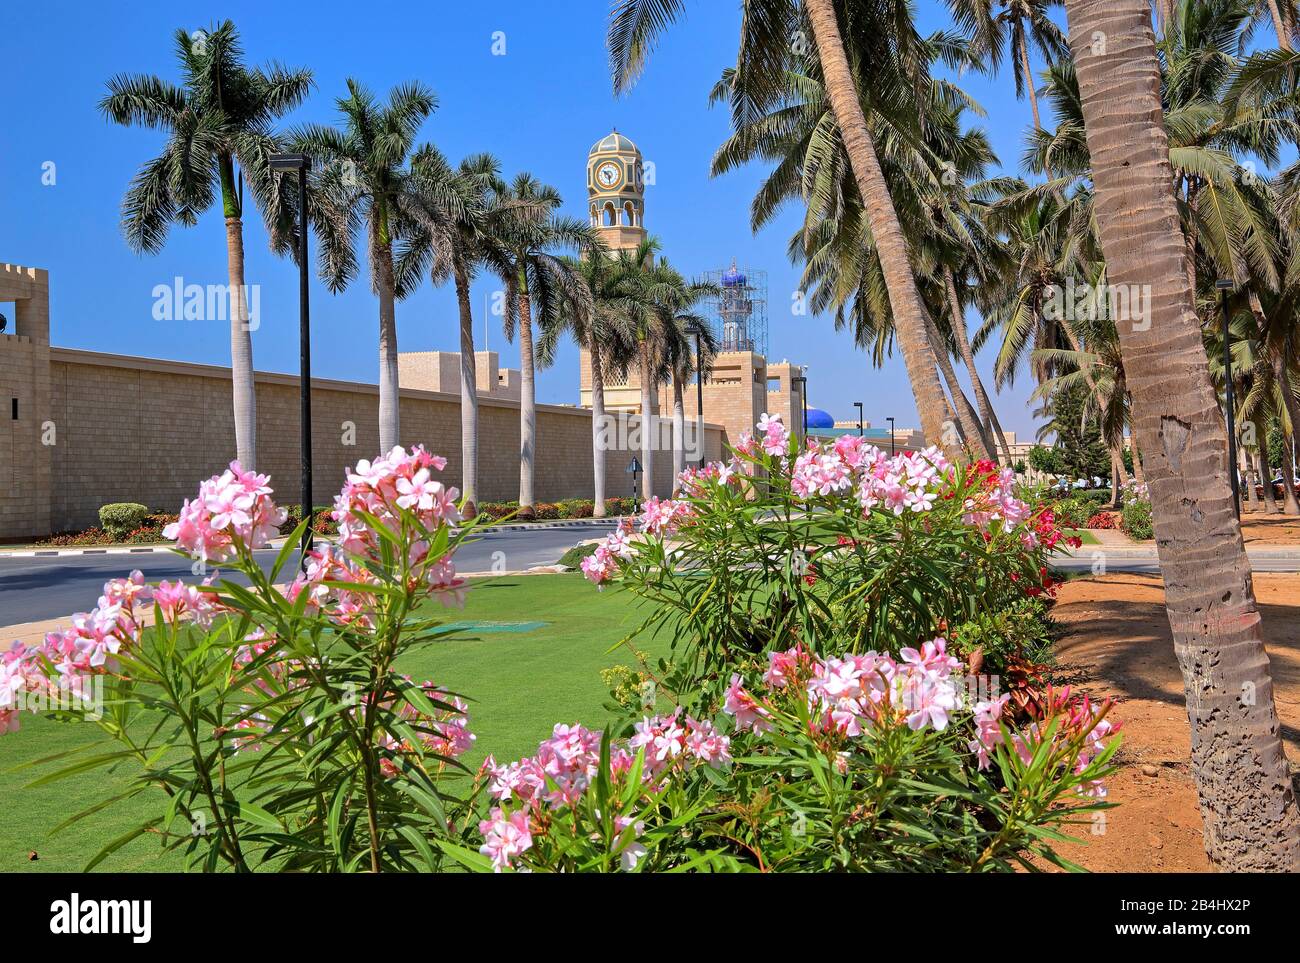 Palmeras con pared del palacio y torre del reloj del palacio sultán, Salalah, Mar Arábigo, Omán Foto de stock